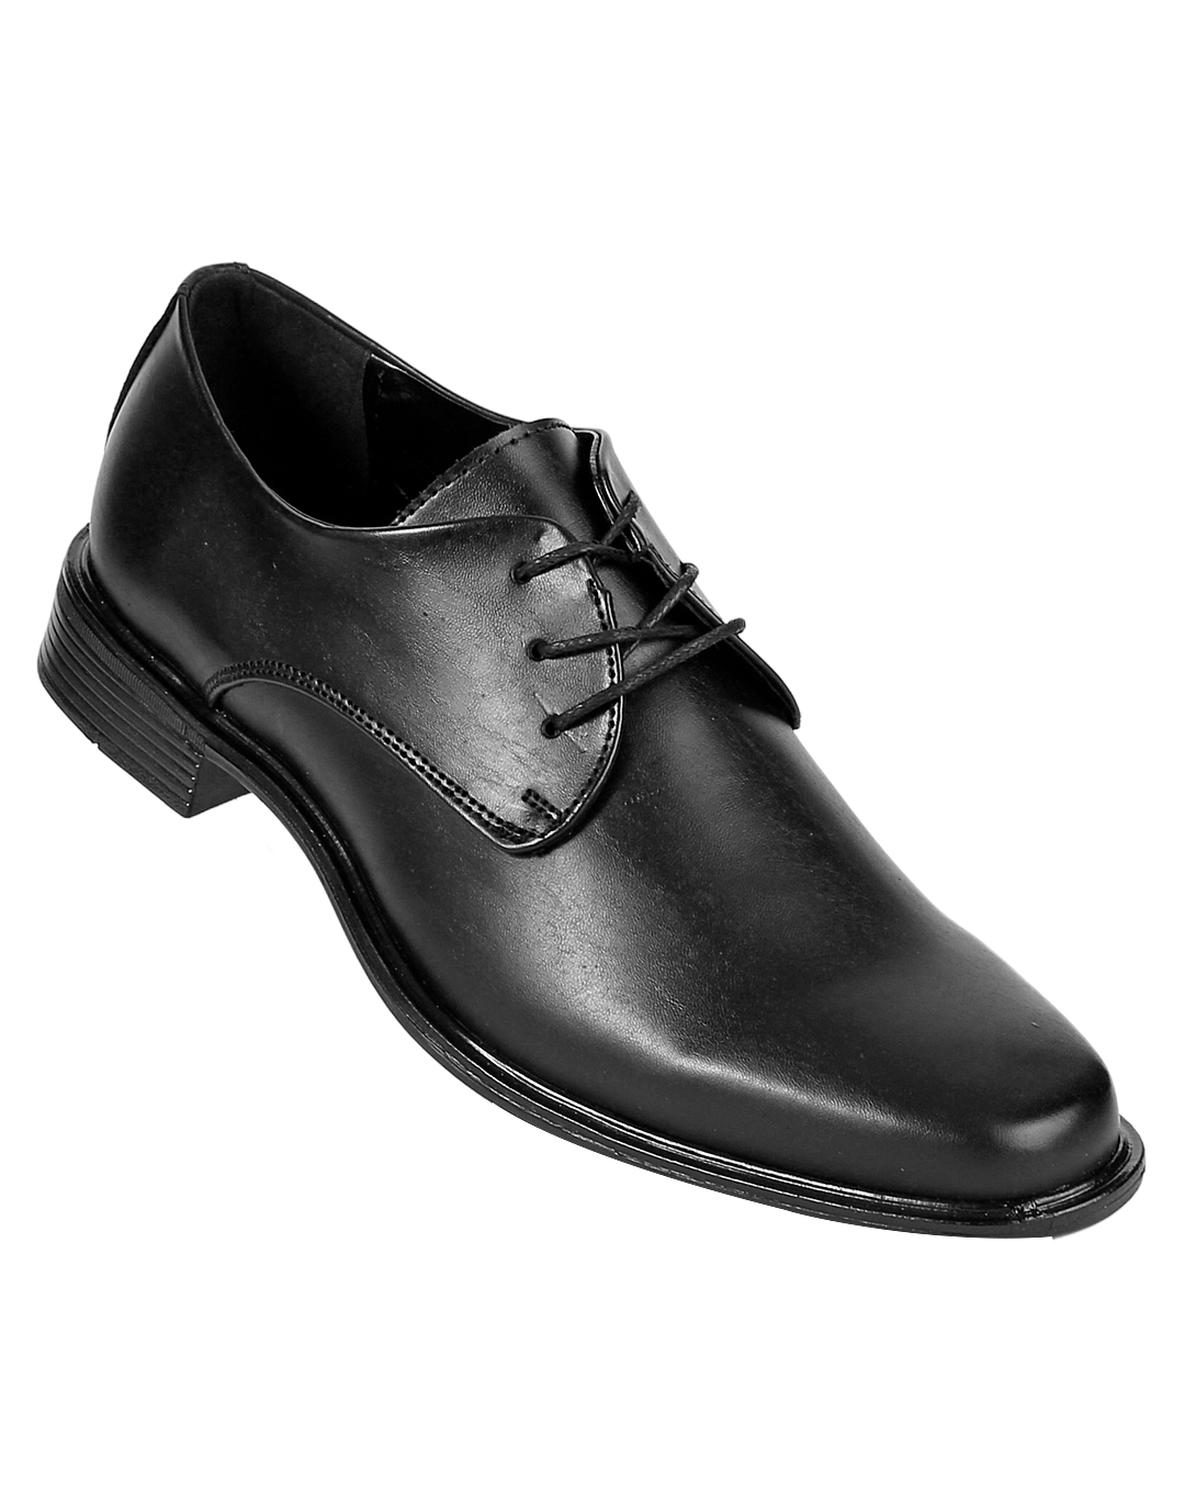 Zapato Vestir Hombre Negro l Stfashion 15103700